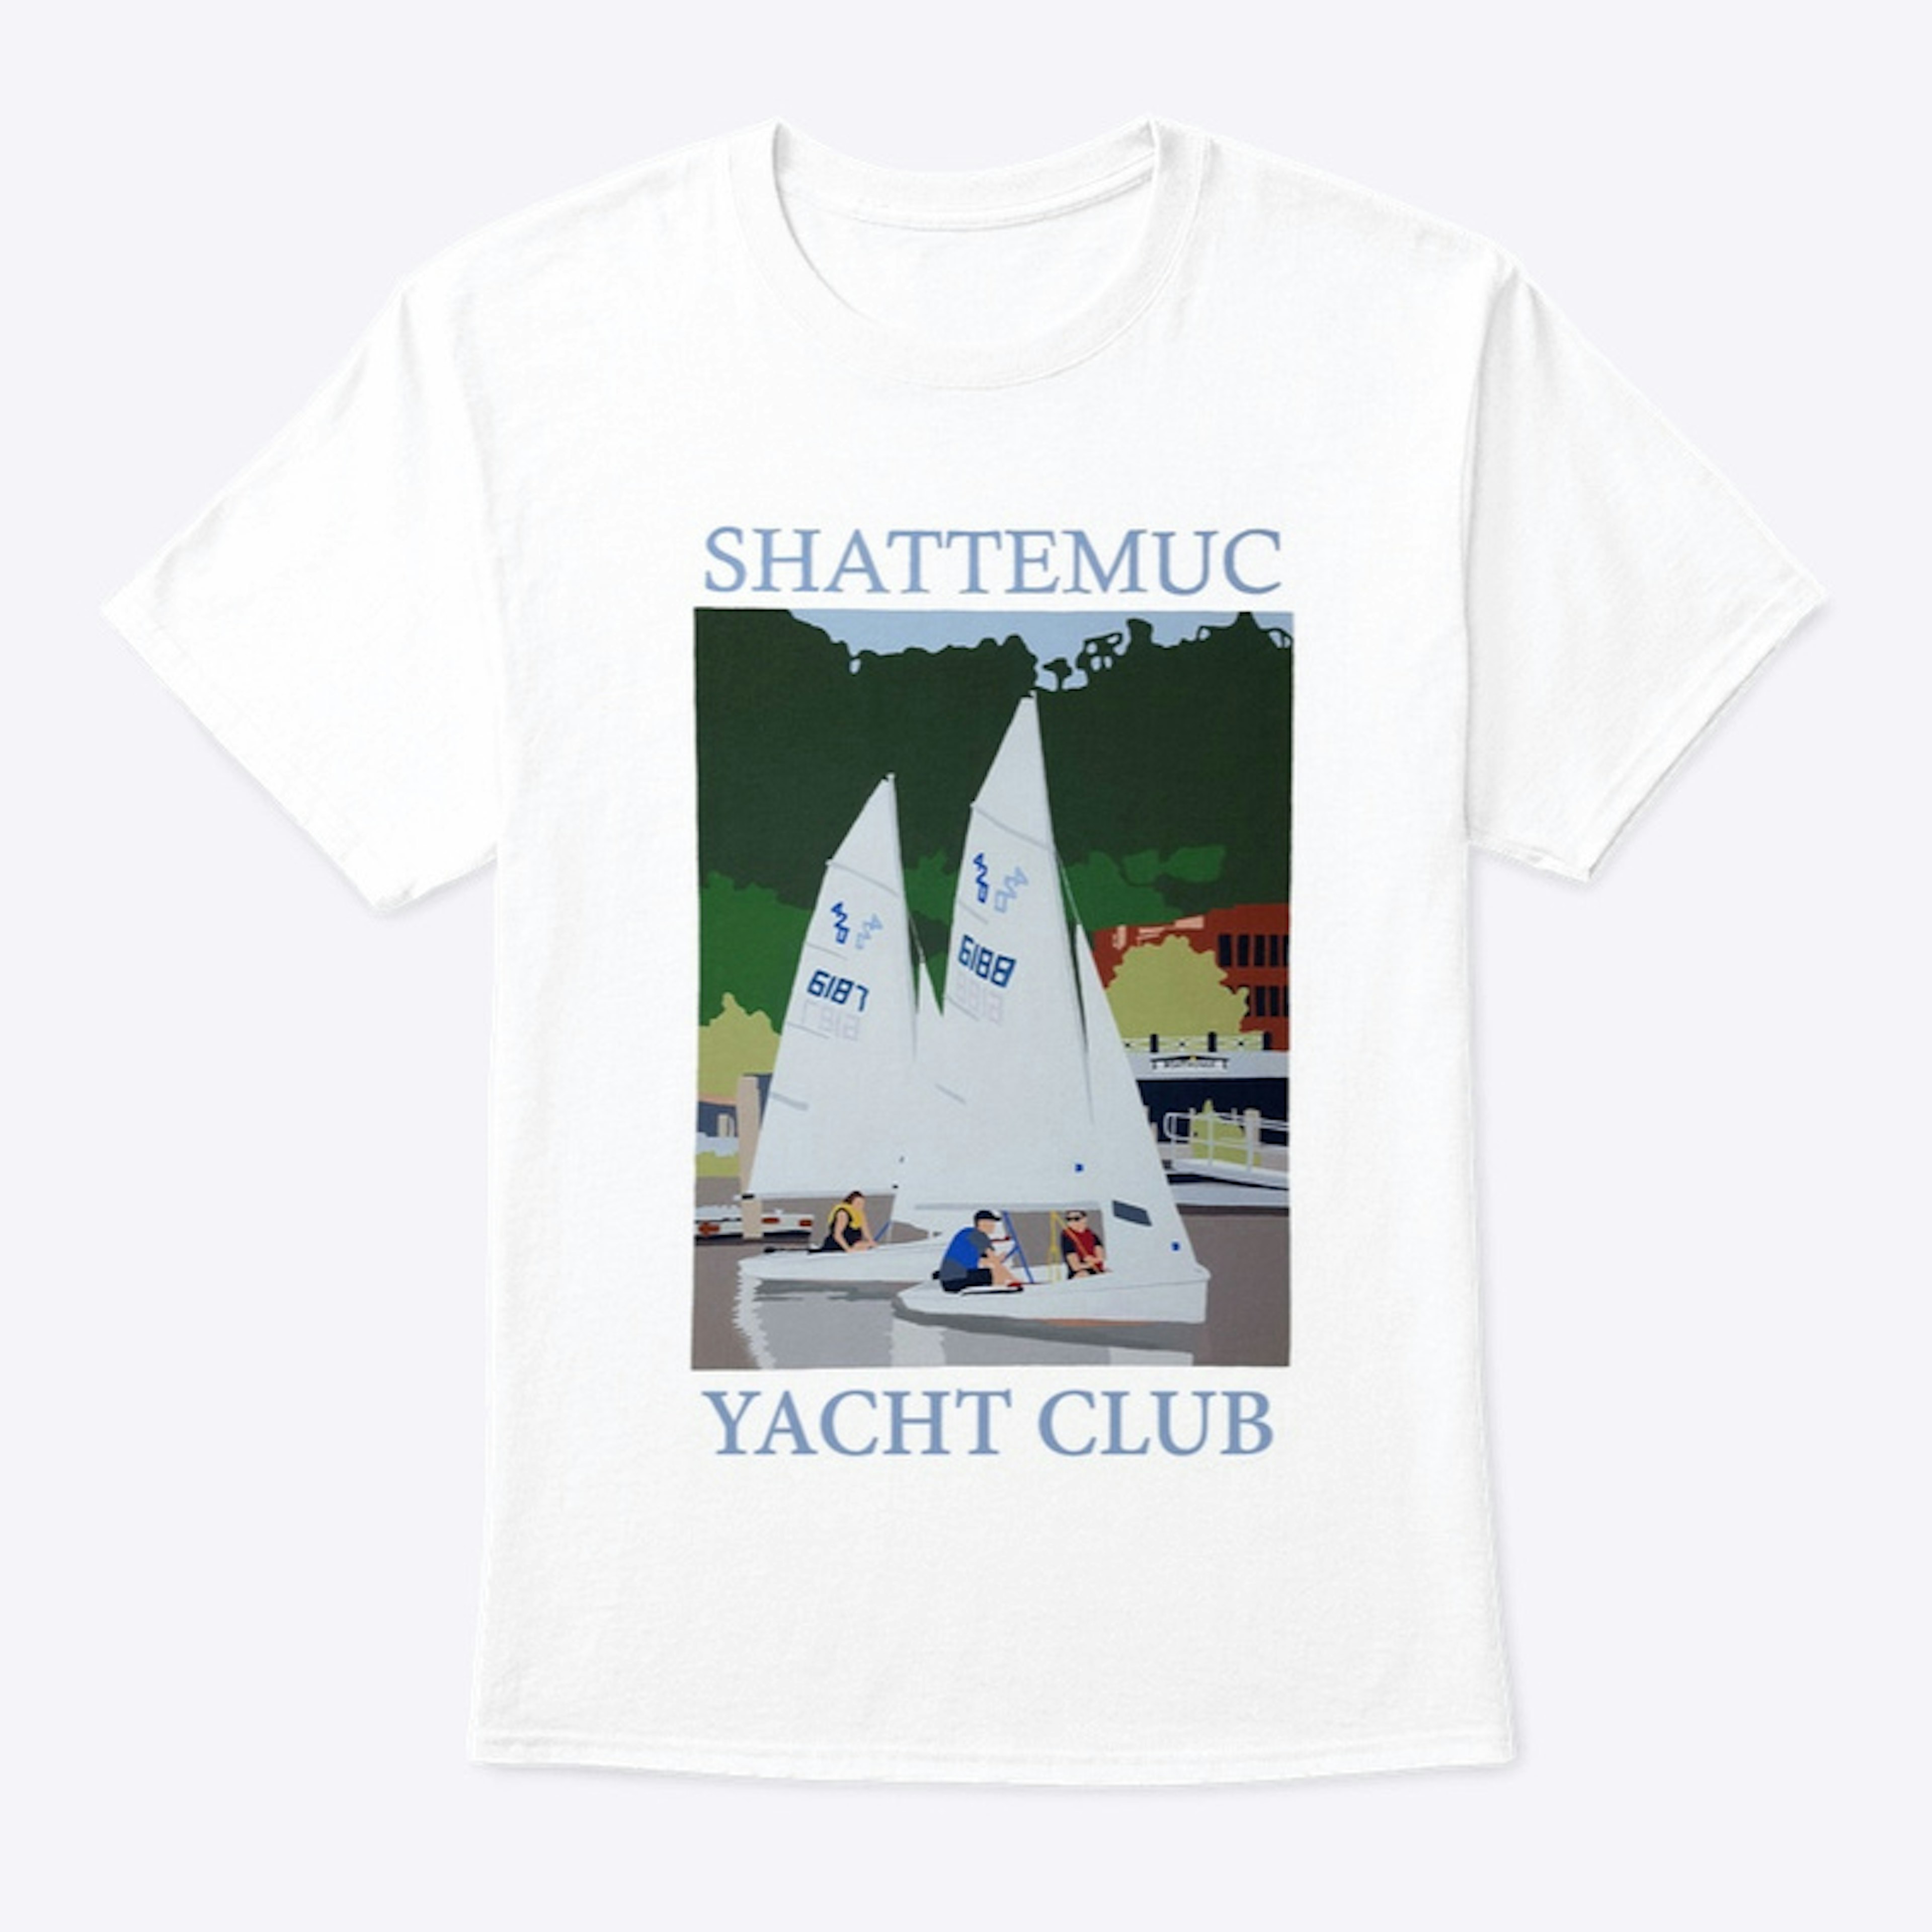 Shattemuc Yacht Club